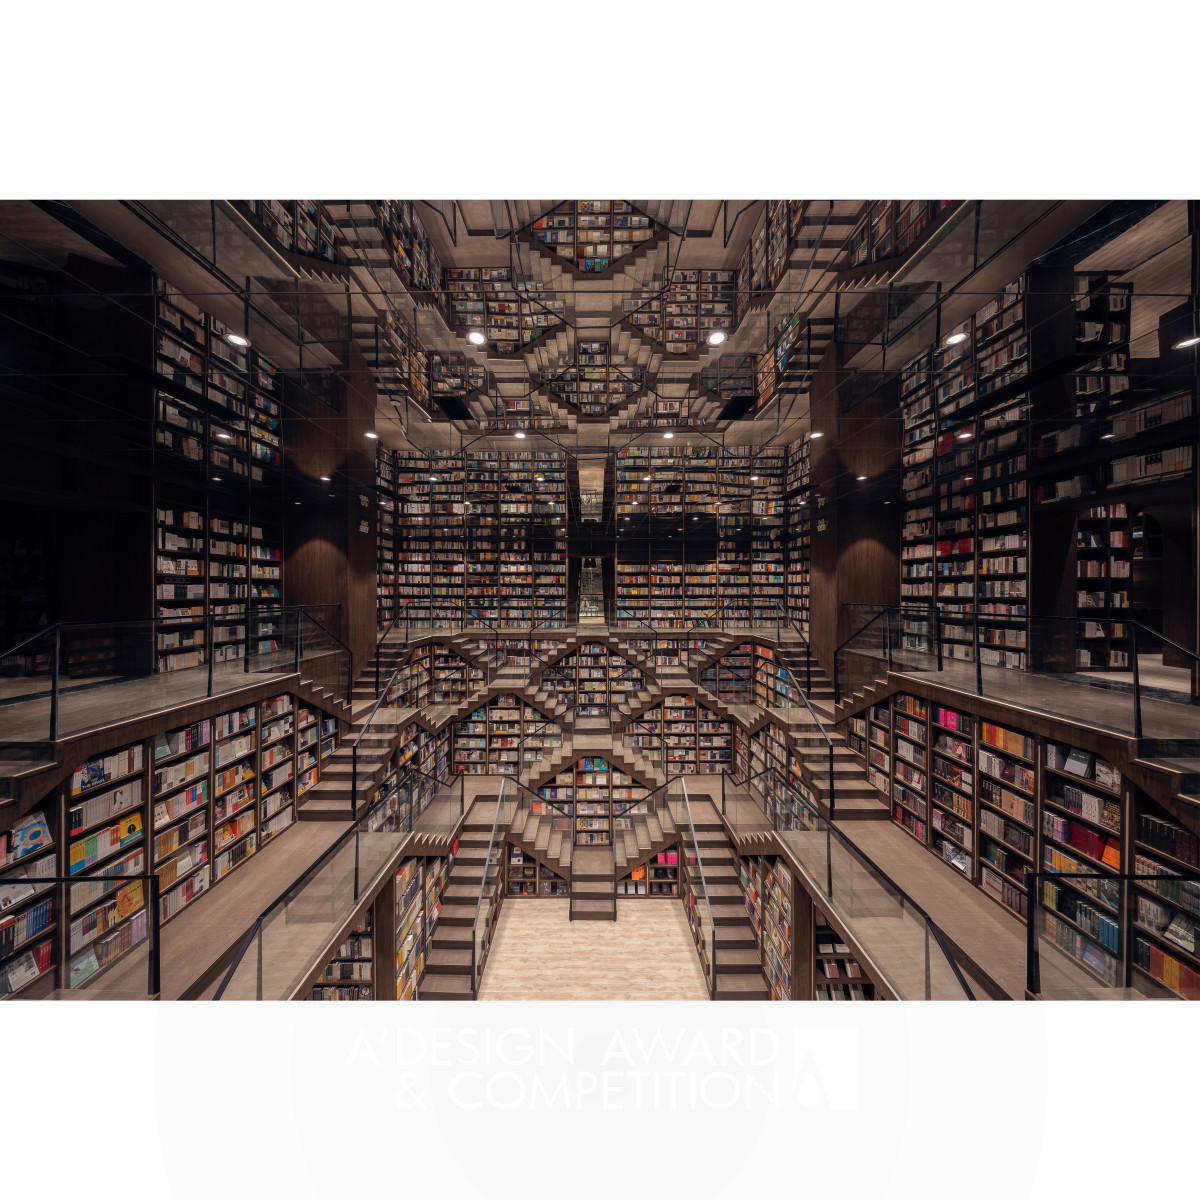 Chongqing Zhongshuge Bookstore by Li Xiang